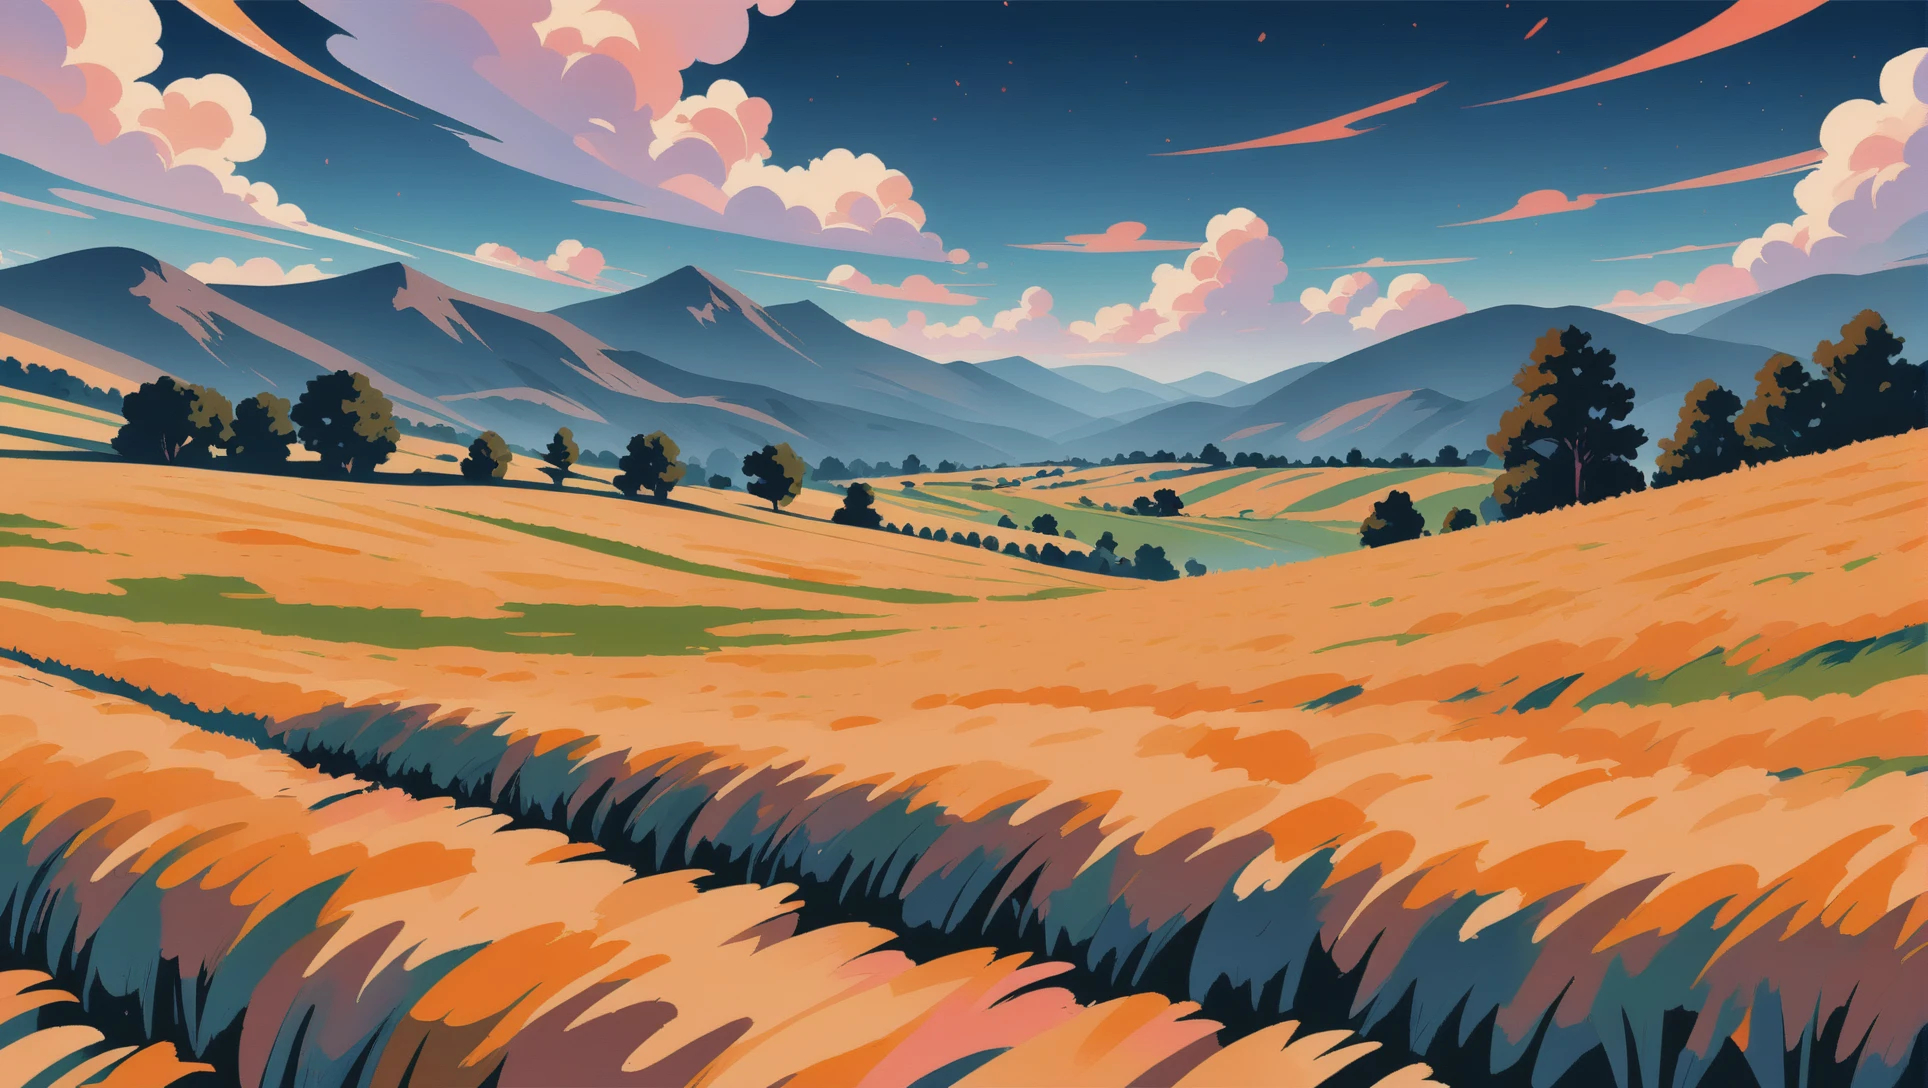 애니메이션 스타일 매트 페인팅, 구불구불한 언덕 사이의 밀밭